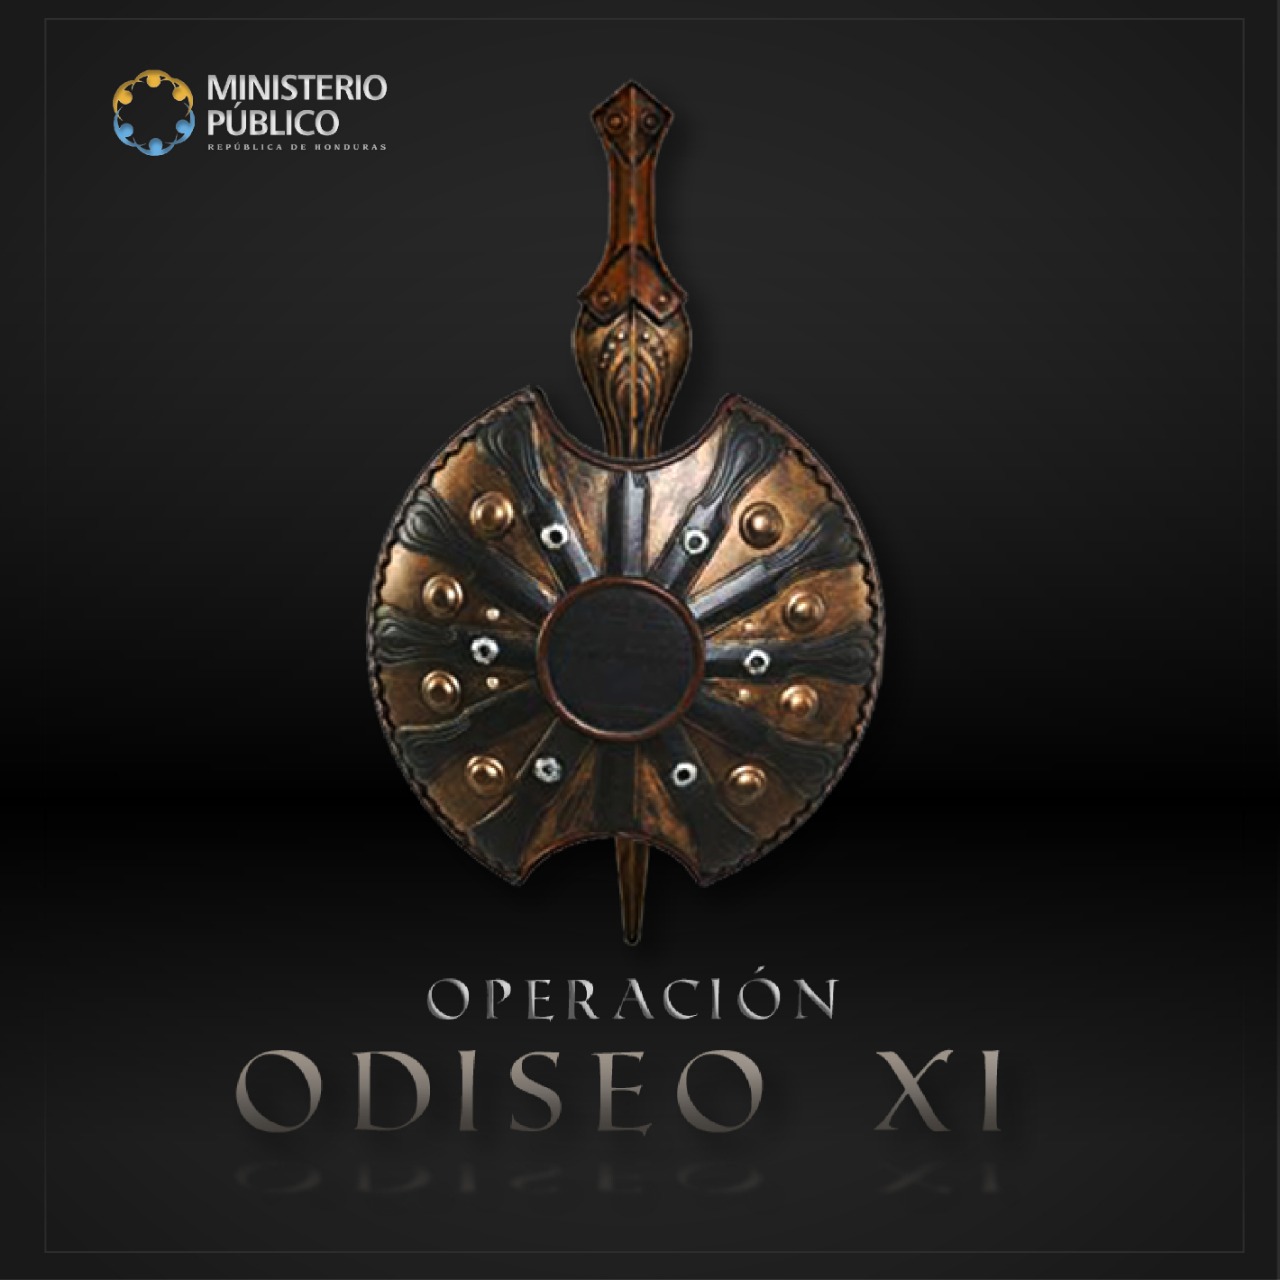 ODISEO XI